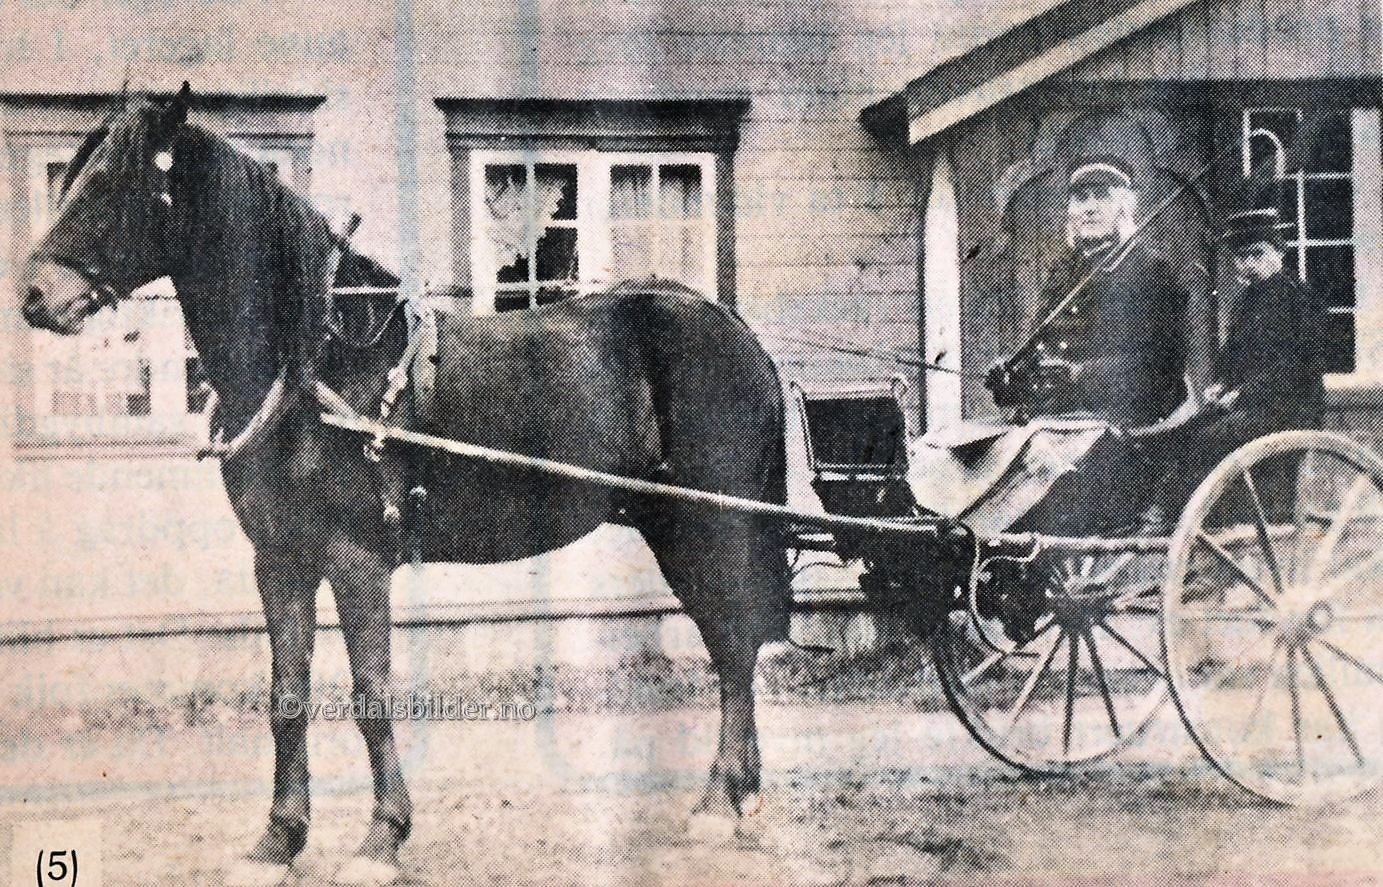 Her i sin kajol forspent en sprek hest klar til utrykking. Bilde og opplysninger i avisklipp fra Verdalingen i 1984.